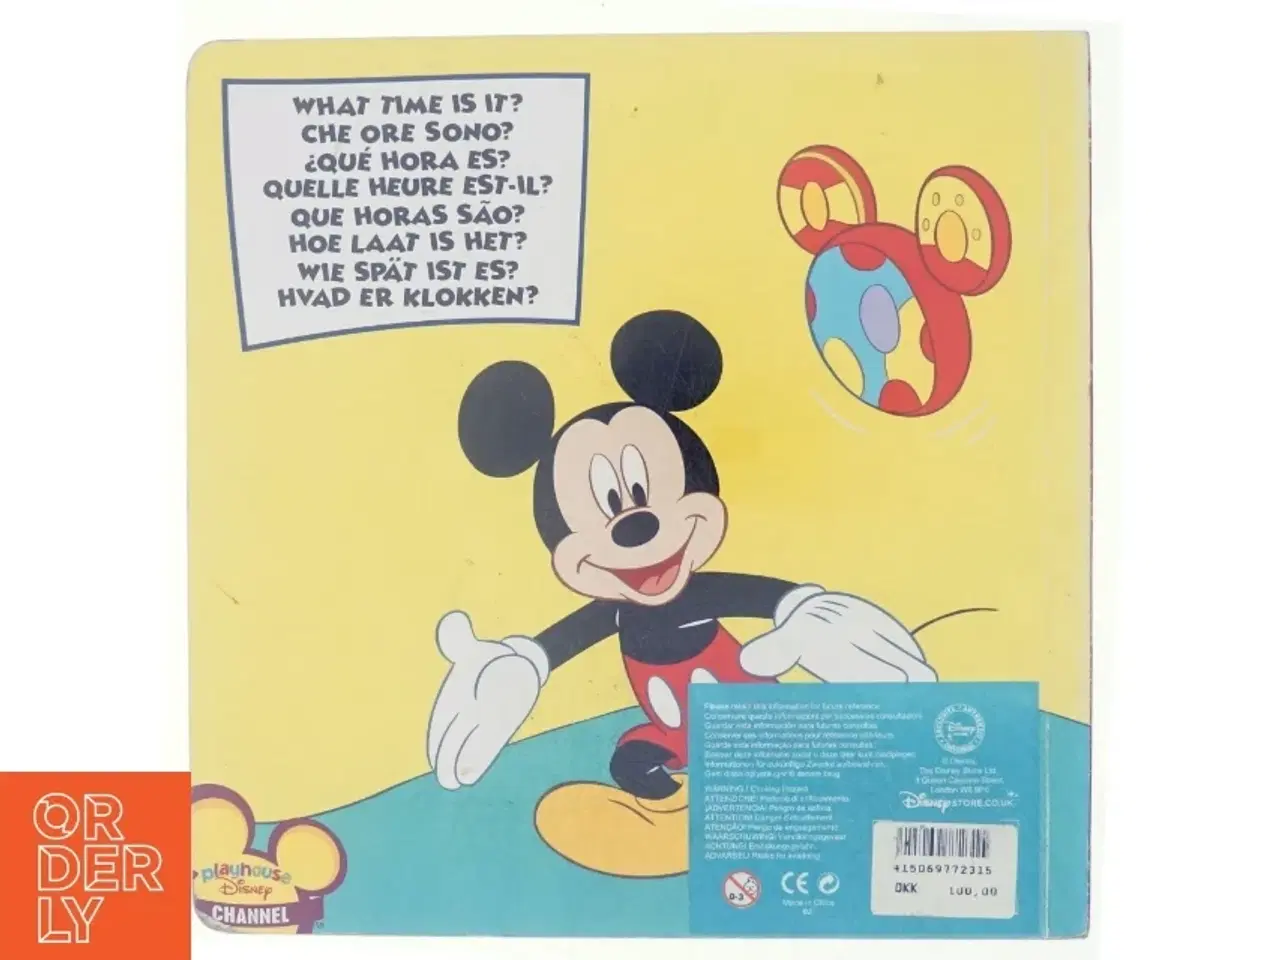 Billede 3 - Clock book fra Disney